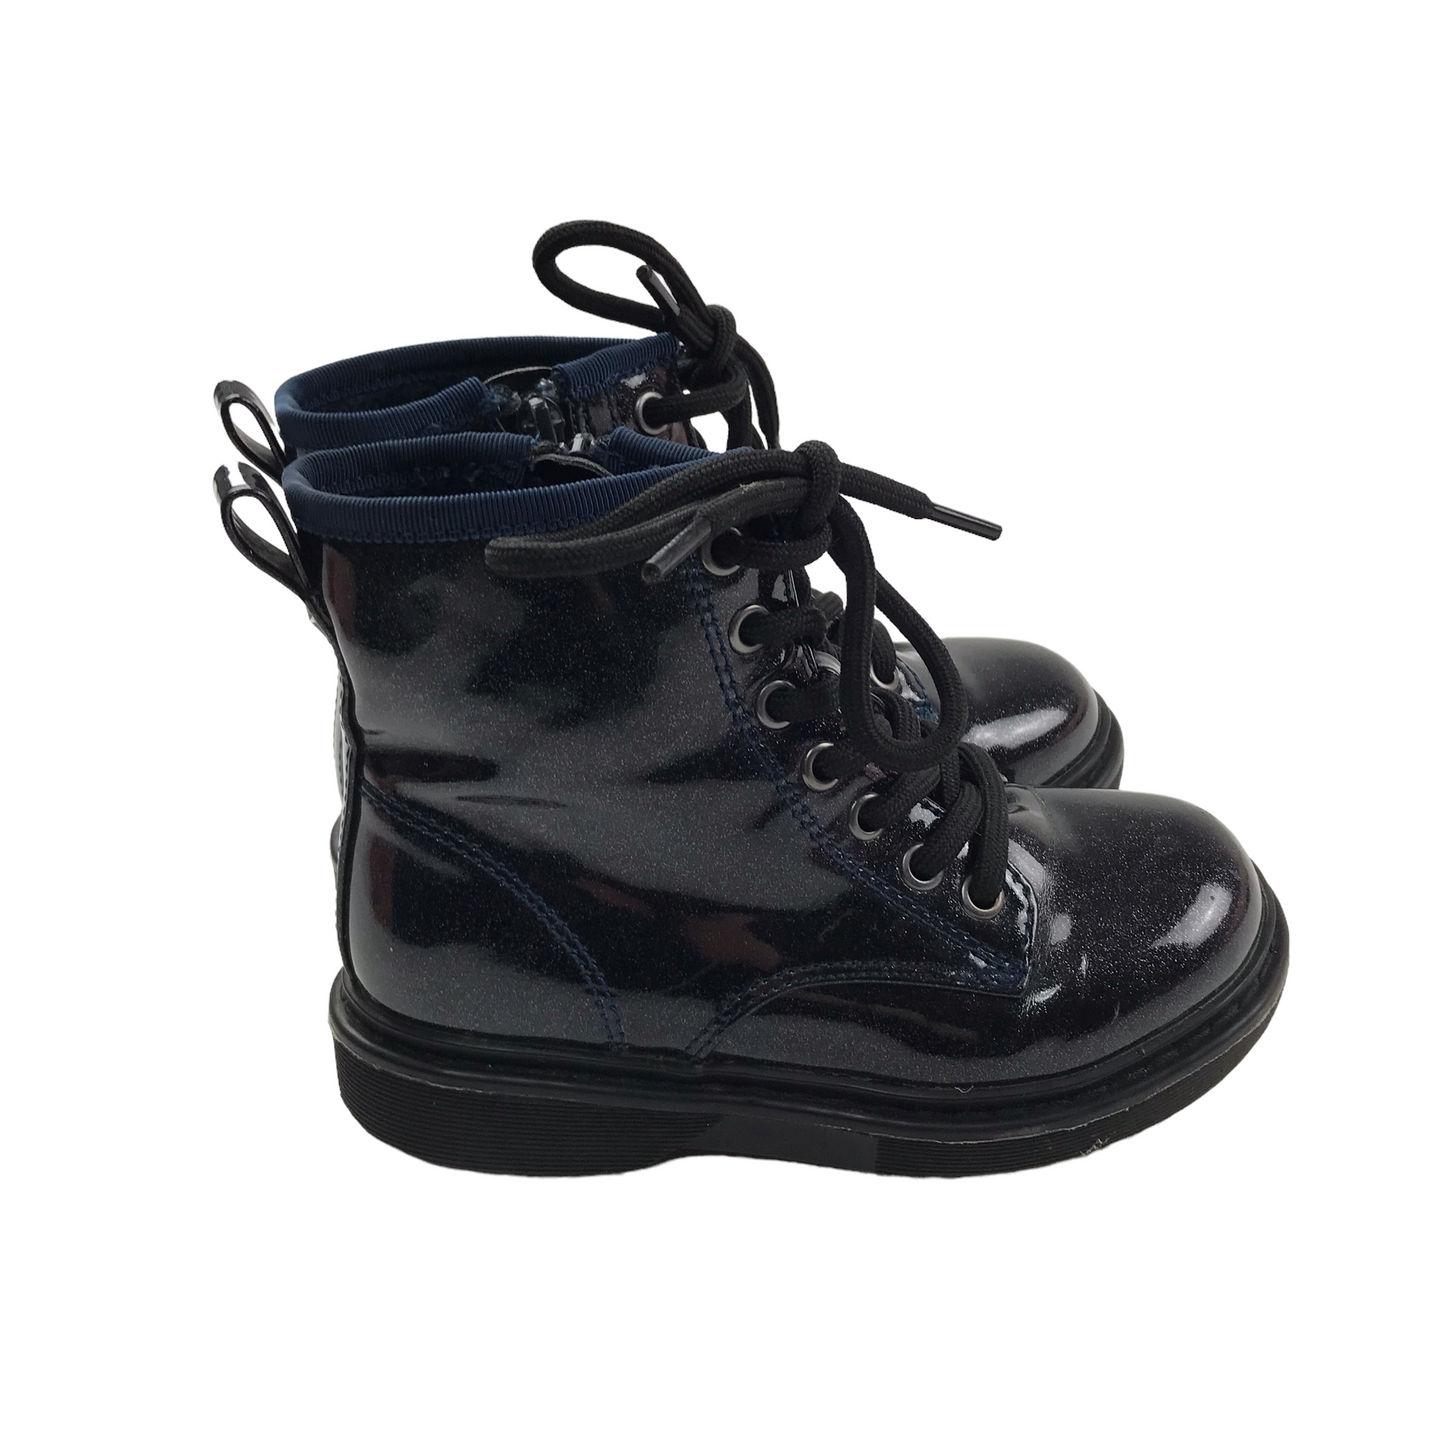 Next Shiny Black Combat Boots Shoe Size 9 junior